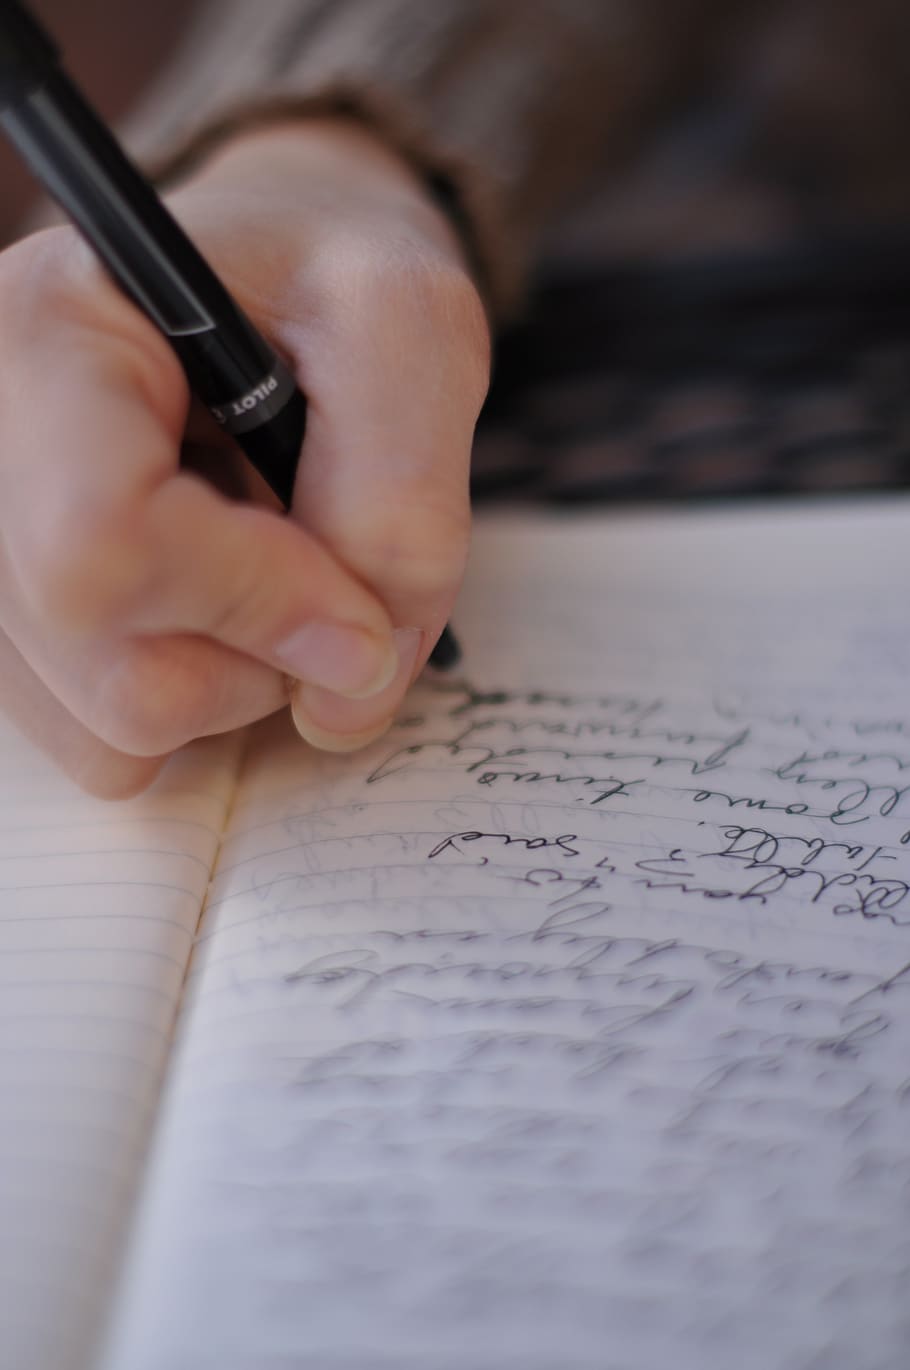 escrever, estudar, caligrafia, mão humana, mão, uma pessoa, pessoas reais, escrevendo, foco seletivo, papel